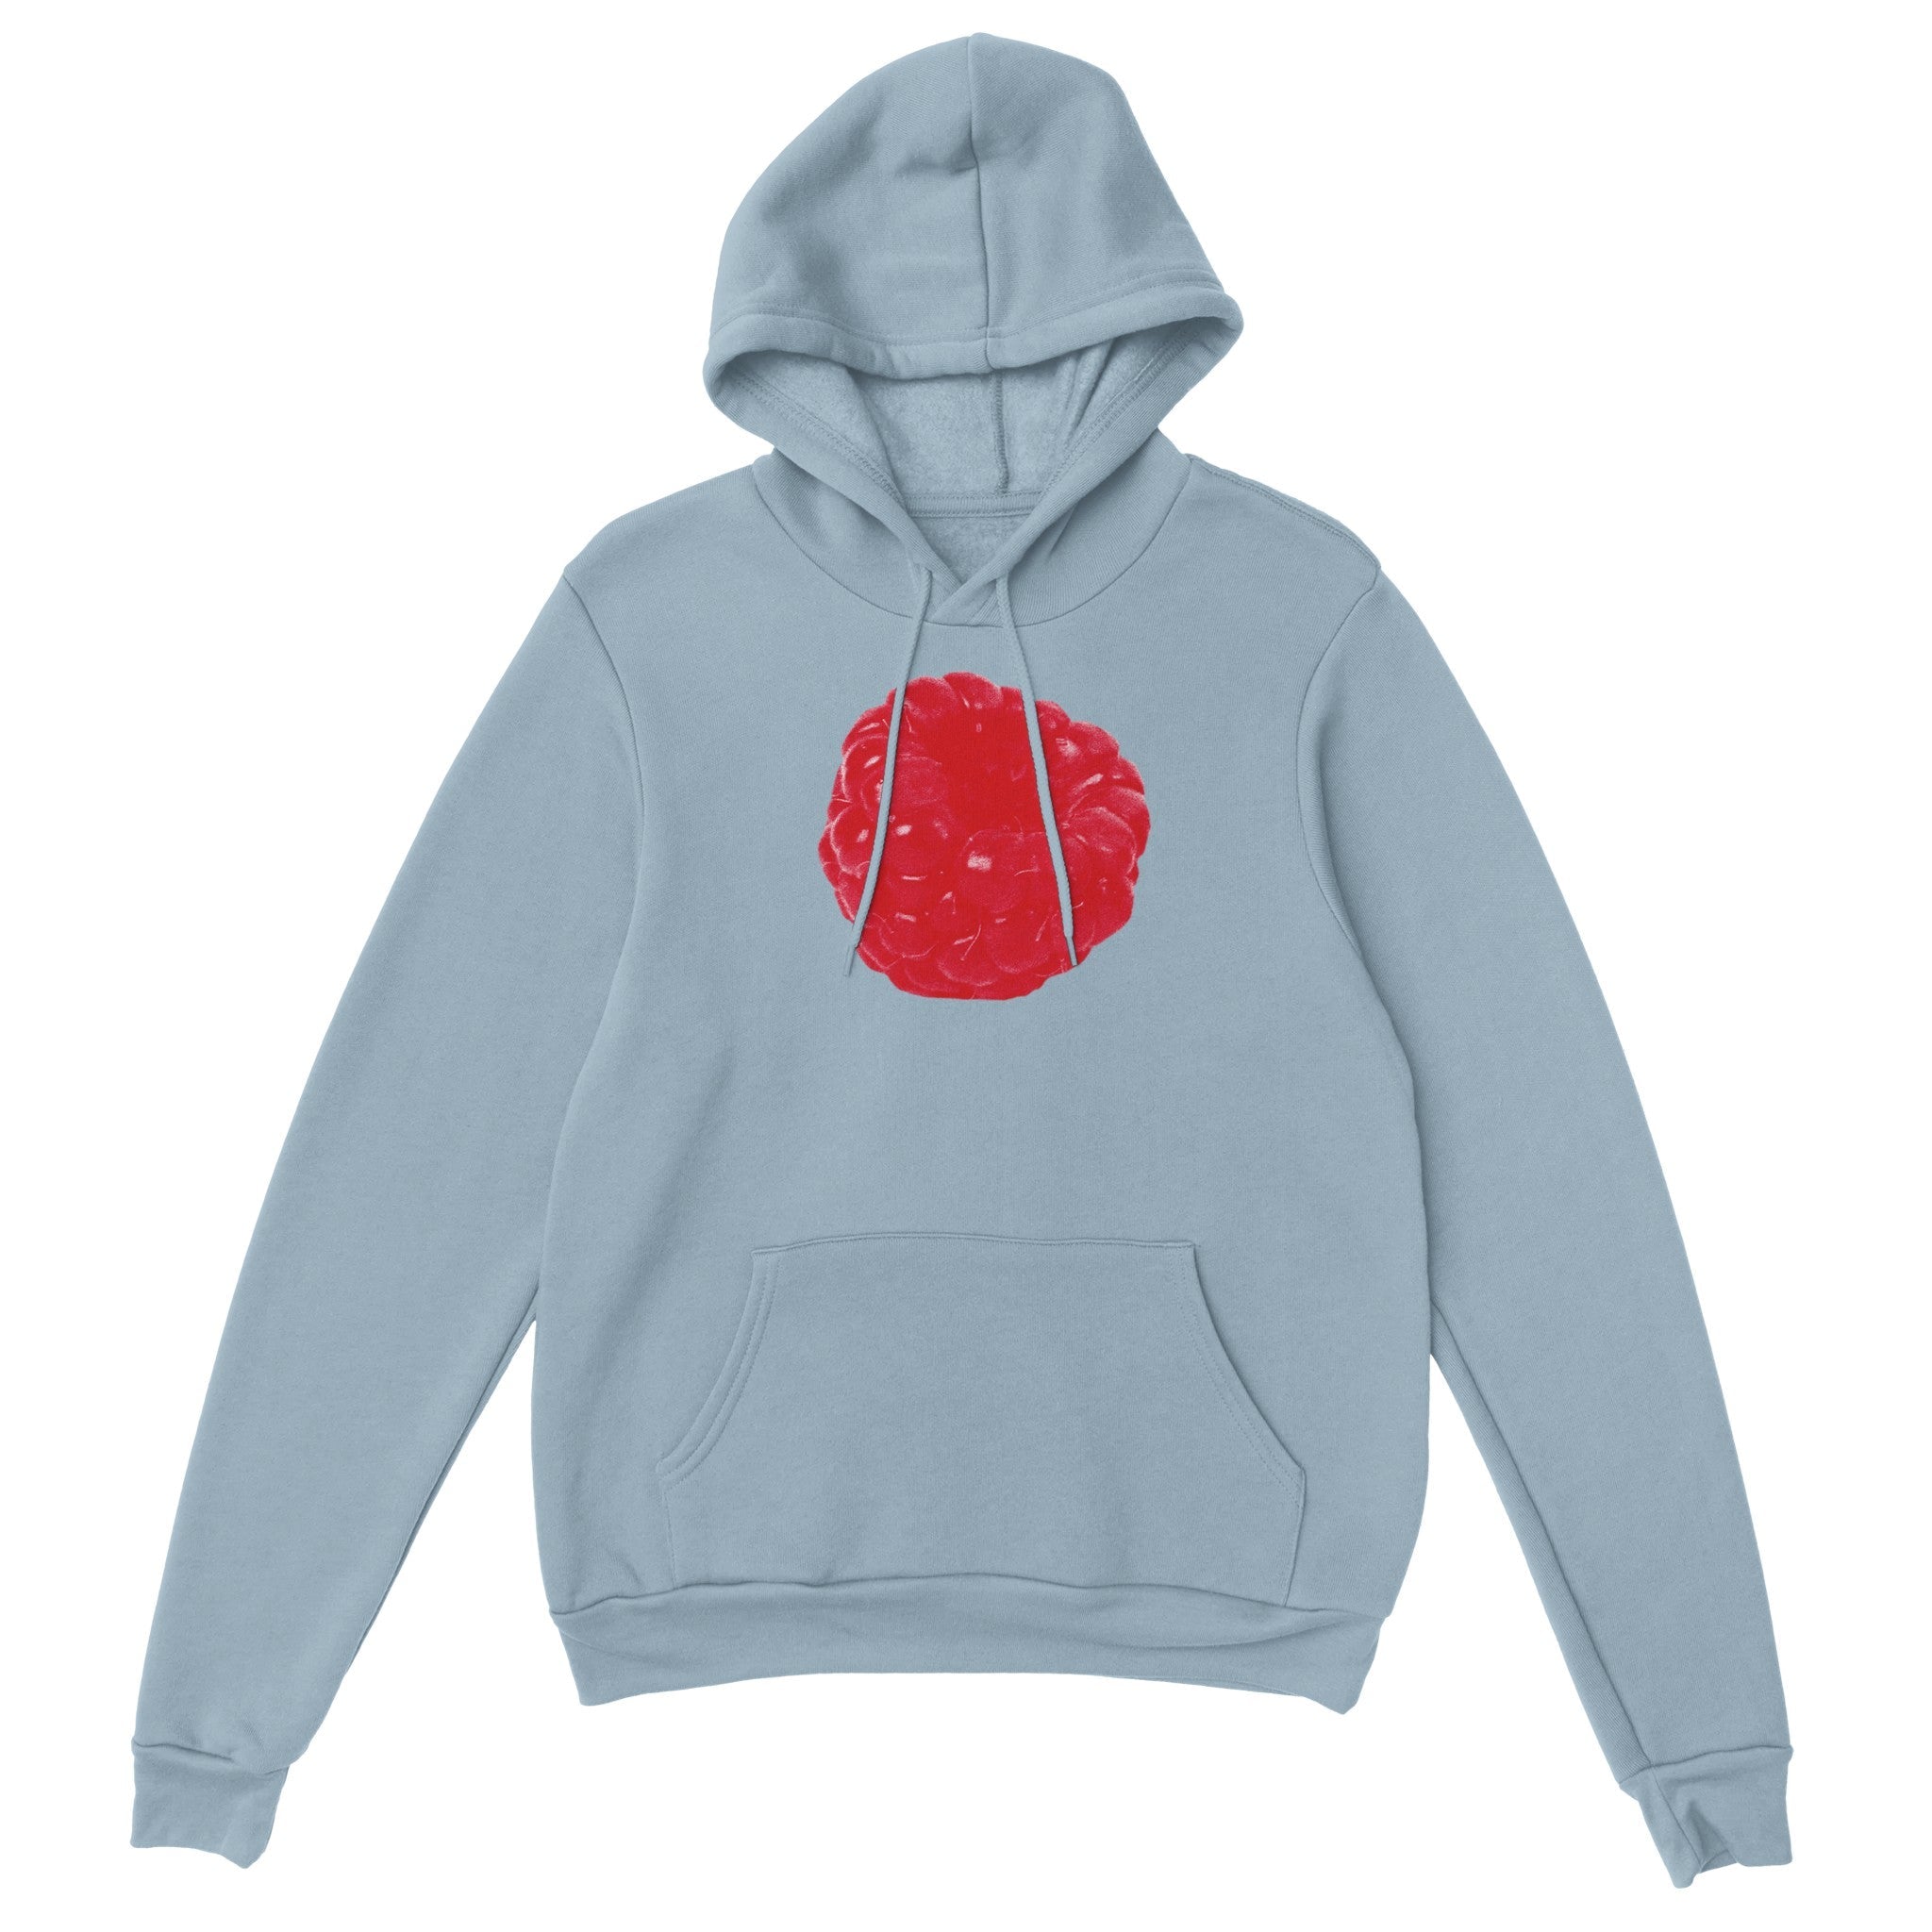 'Berry Sweet' hoodie - In Print We Trust